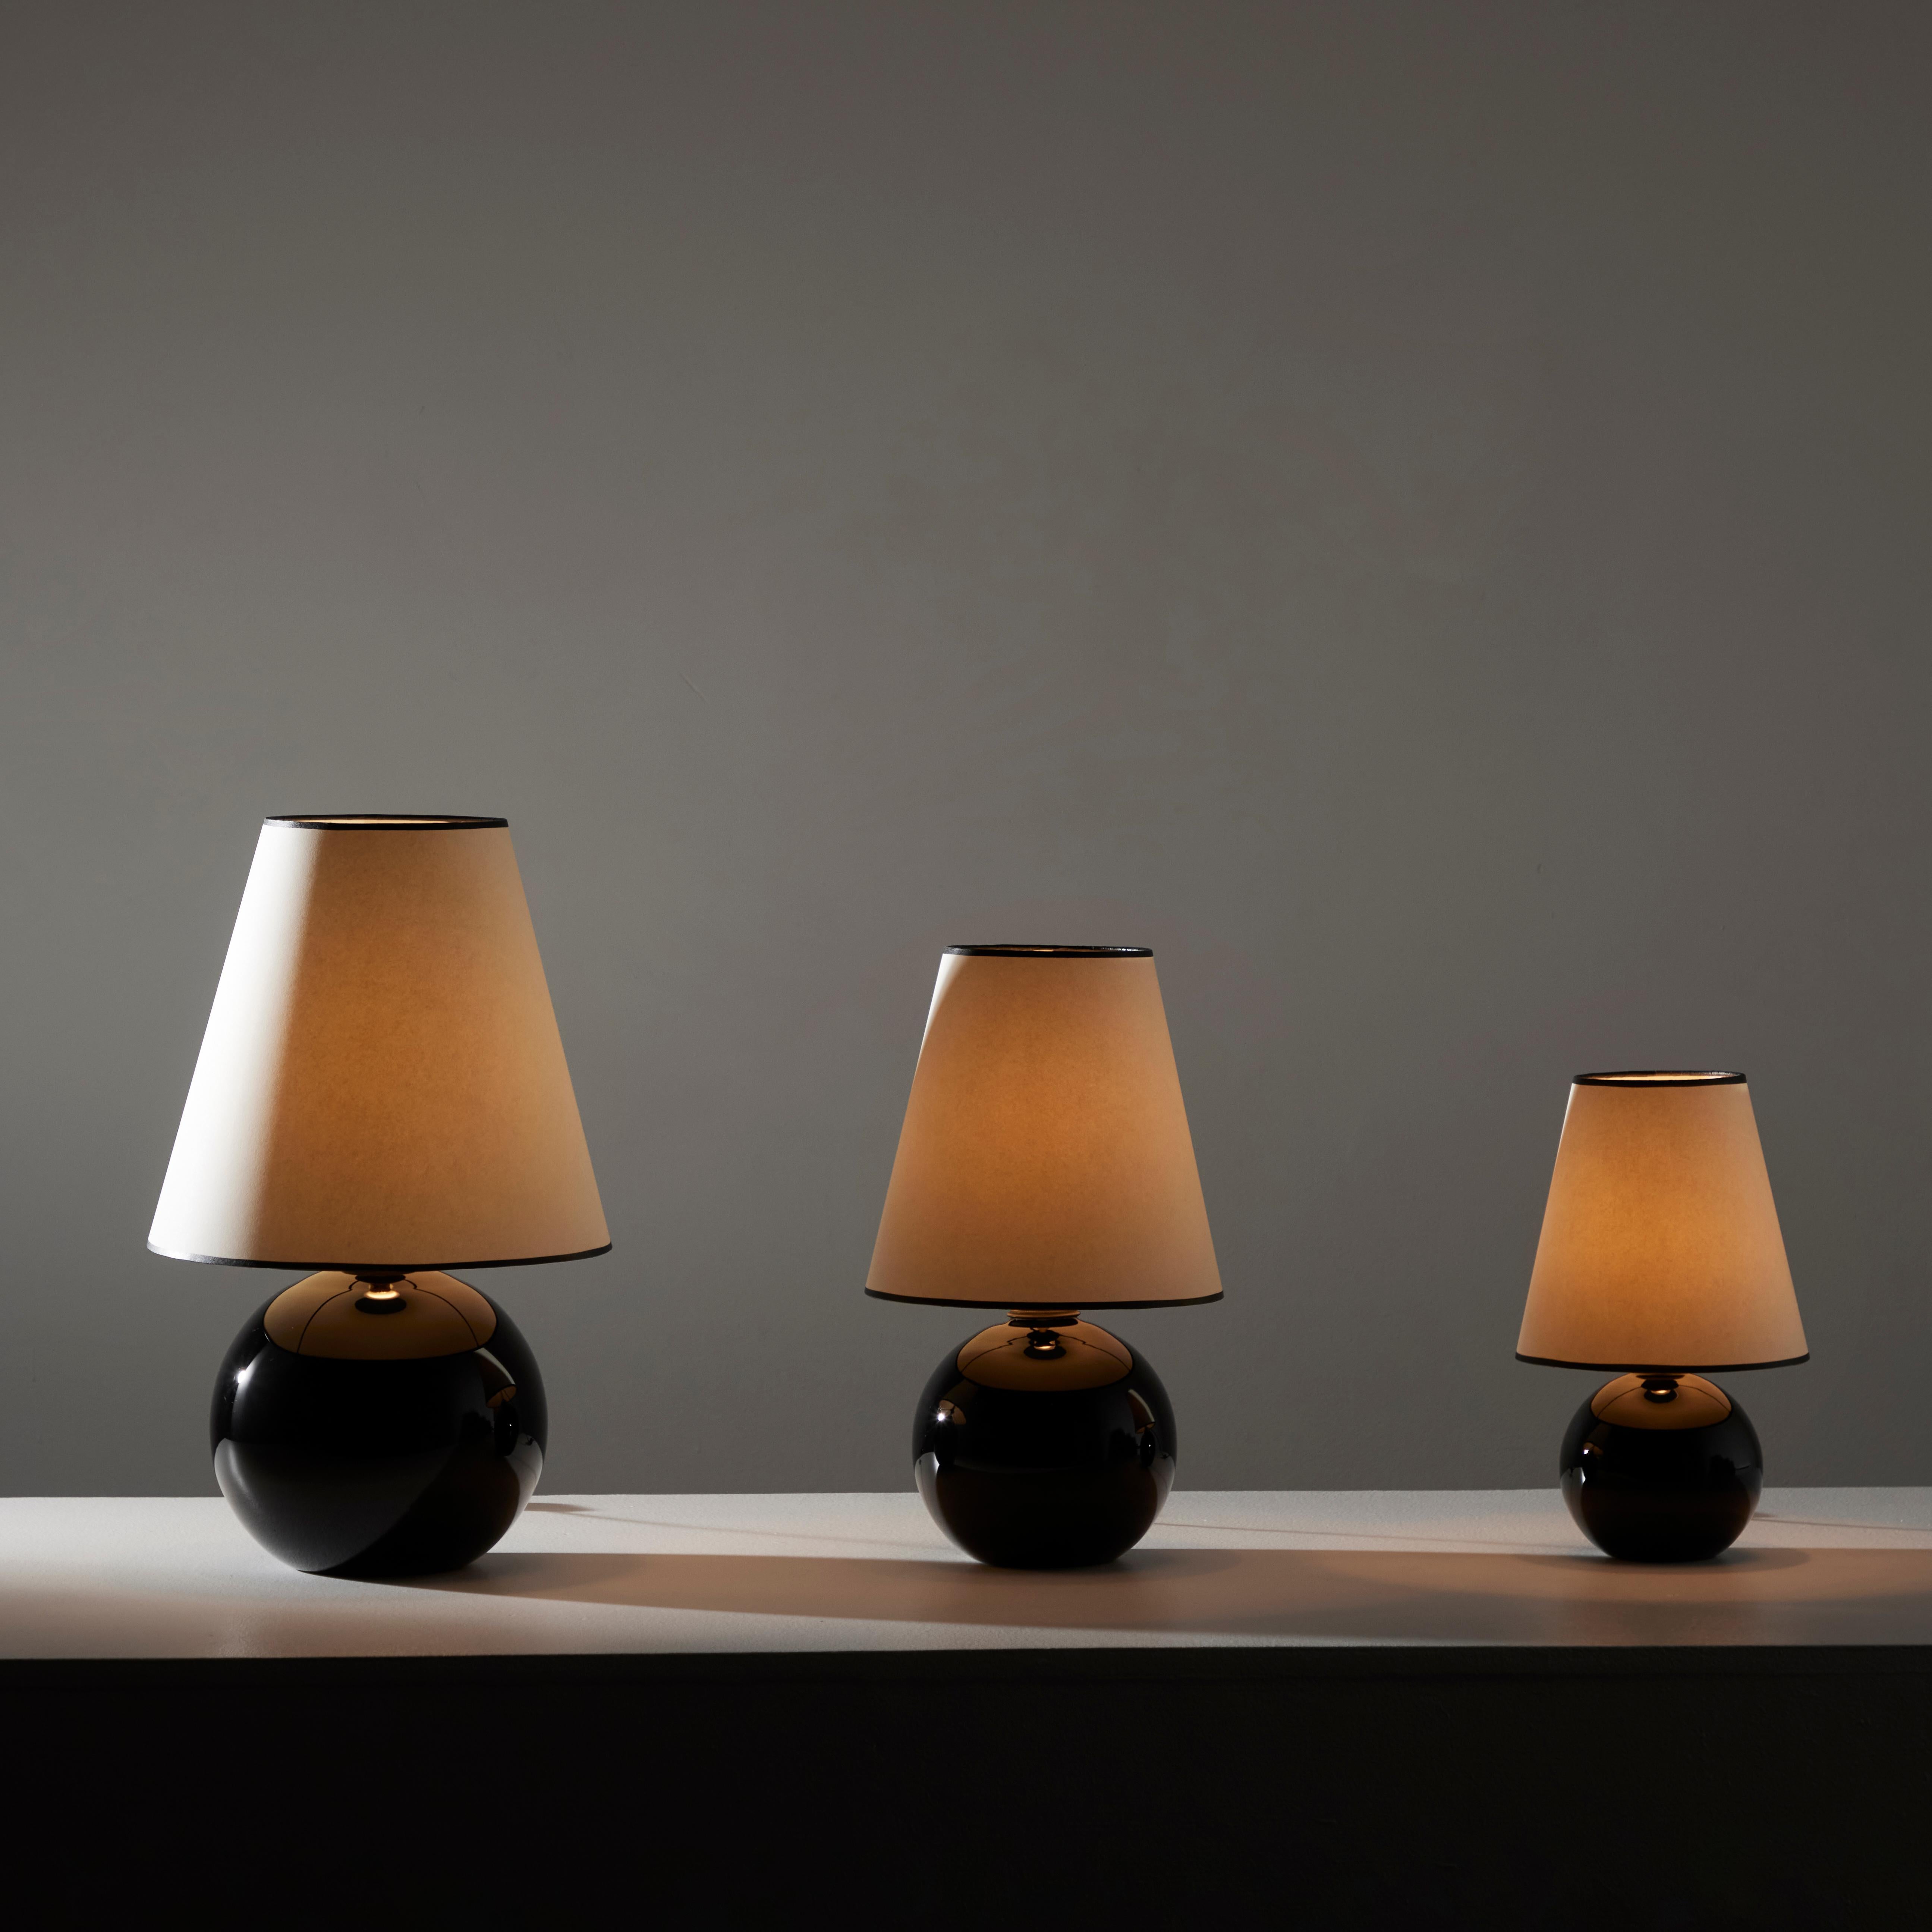 Satz schwarzer Opalintischlampen von Jacques Adnet. Entworfen und hergestellt in Frankreich, ca. 1940er Jahre. Schwarzer opalfarbener Kugelsockel mit einem neu gefertigten Leinenschirm. Jede Lampe enthält eine europäische B22-Bajonettfassung, die